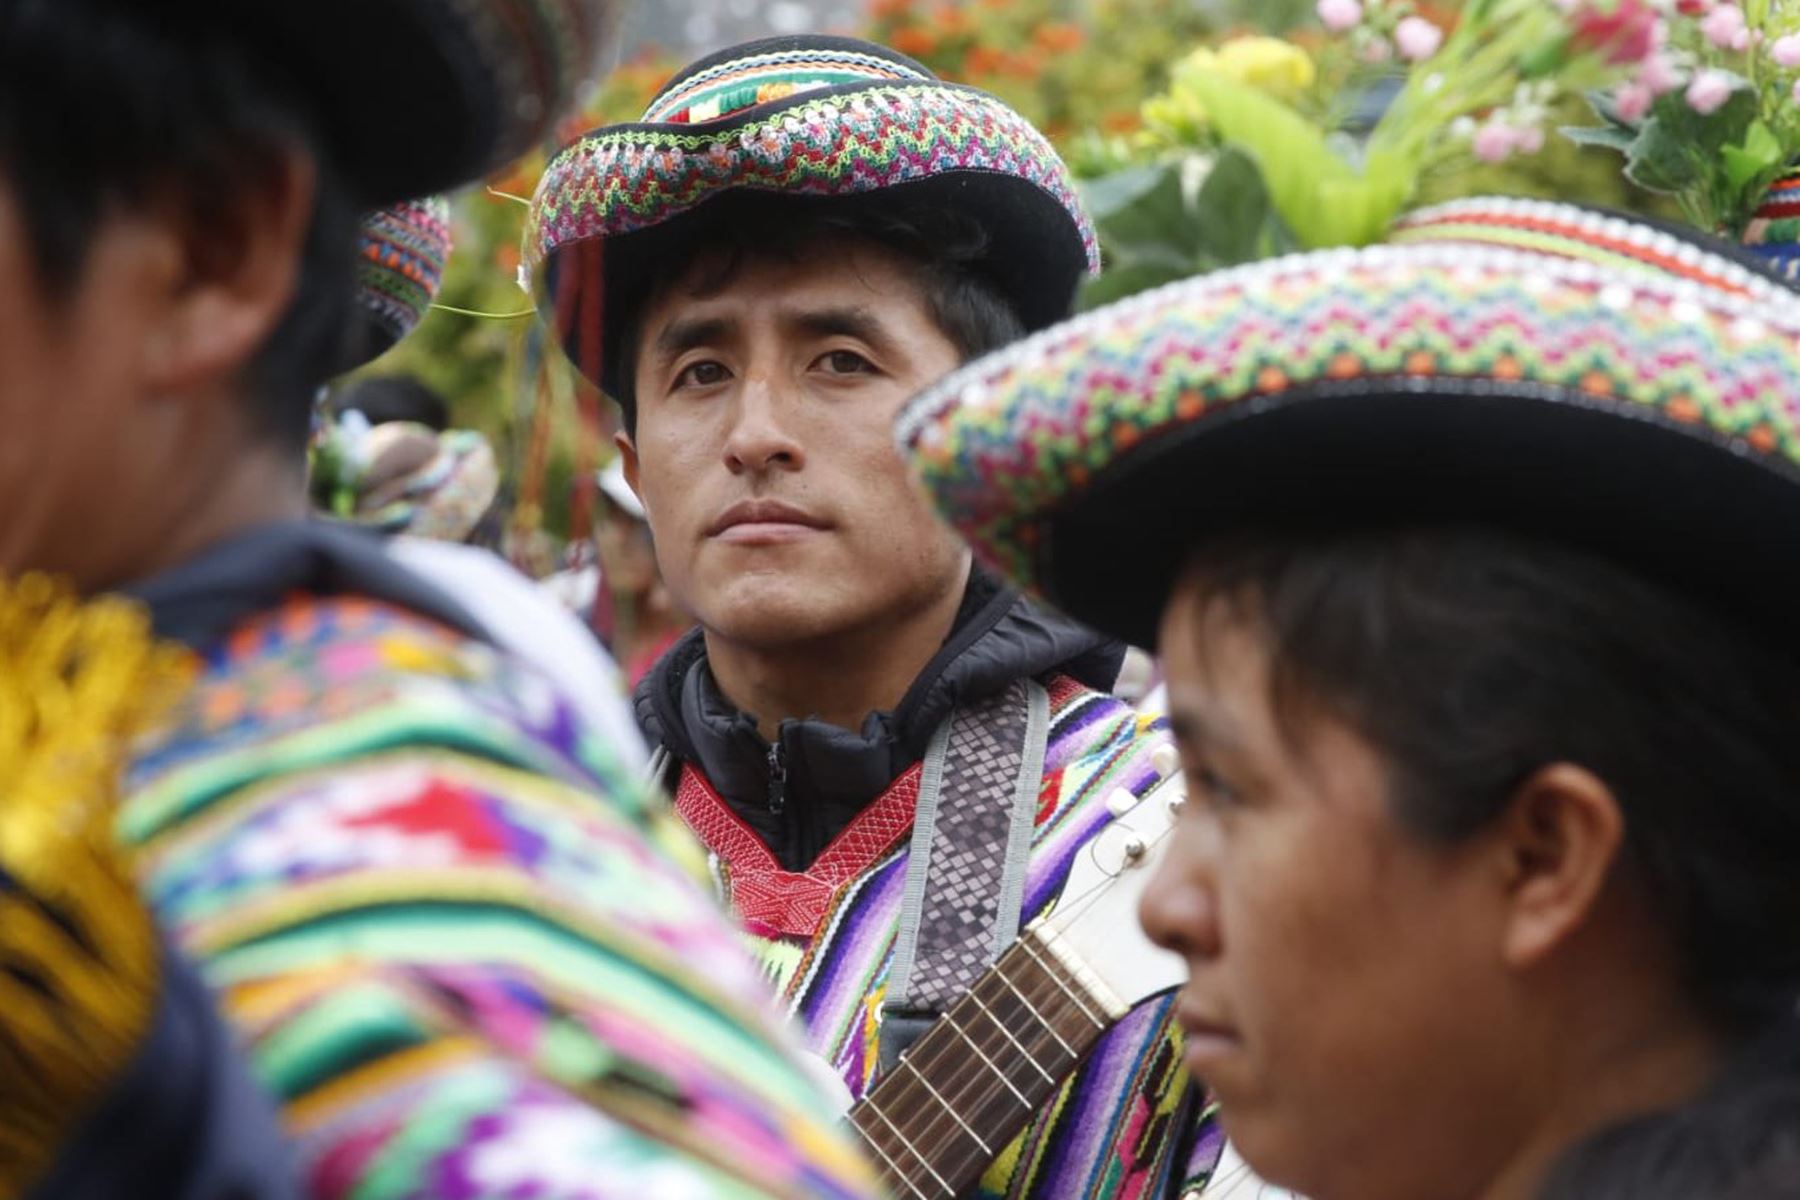 La ministra de Cultura, Leslie Urteaga, dio inicio  en la Plaza de Armas de Ayacucho, al festival ‘Tusuykunapa Raymin’ -  Fiesta de las Danzas, que forma parte de la "Gira Cultura" de los Elencos Nacionales del Perú.
Foto: Mincul